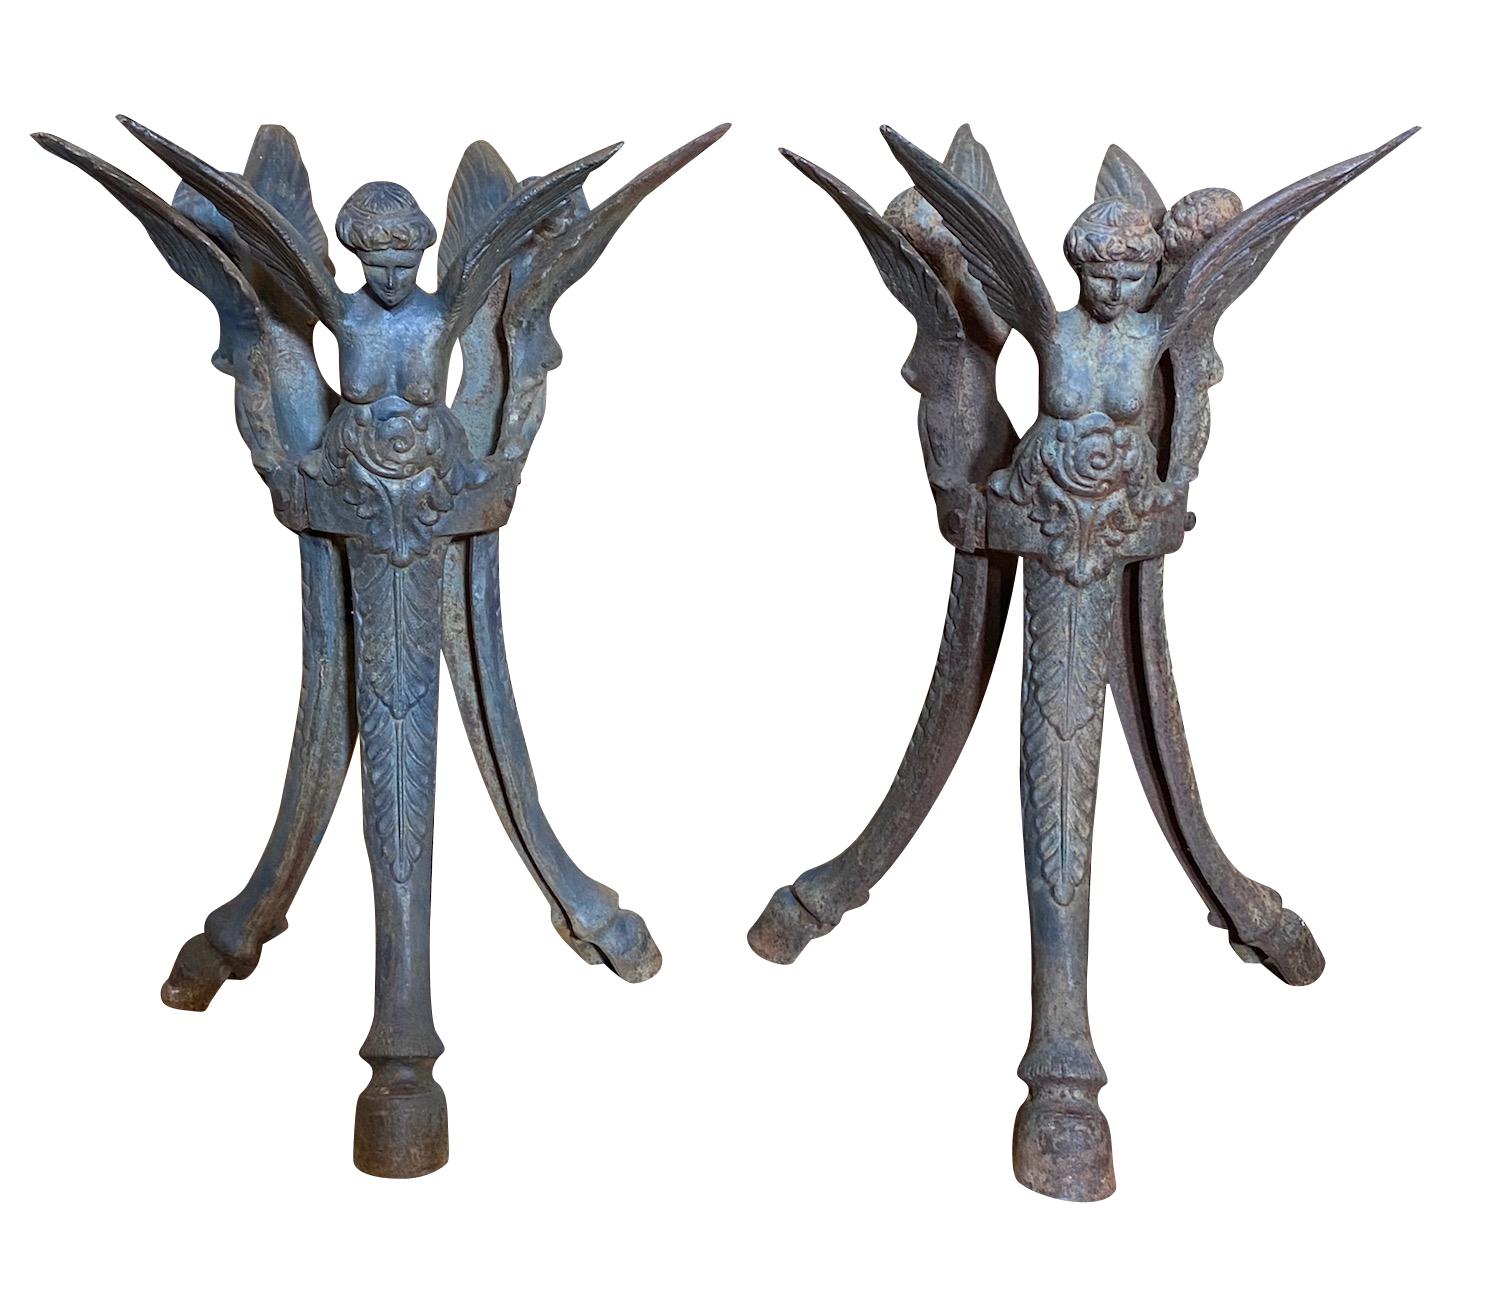 Paar antike französische schmiedeeiserne figurale Beistelltische, um 1900
Mit dunkler Patina, drei geflügelten Putten und Hufenfüßen 